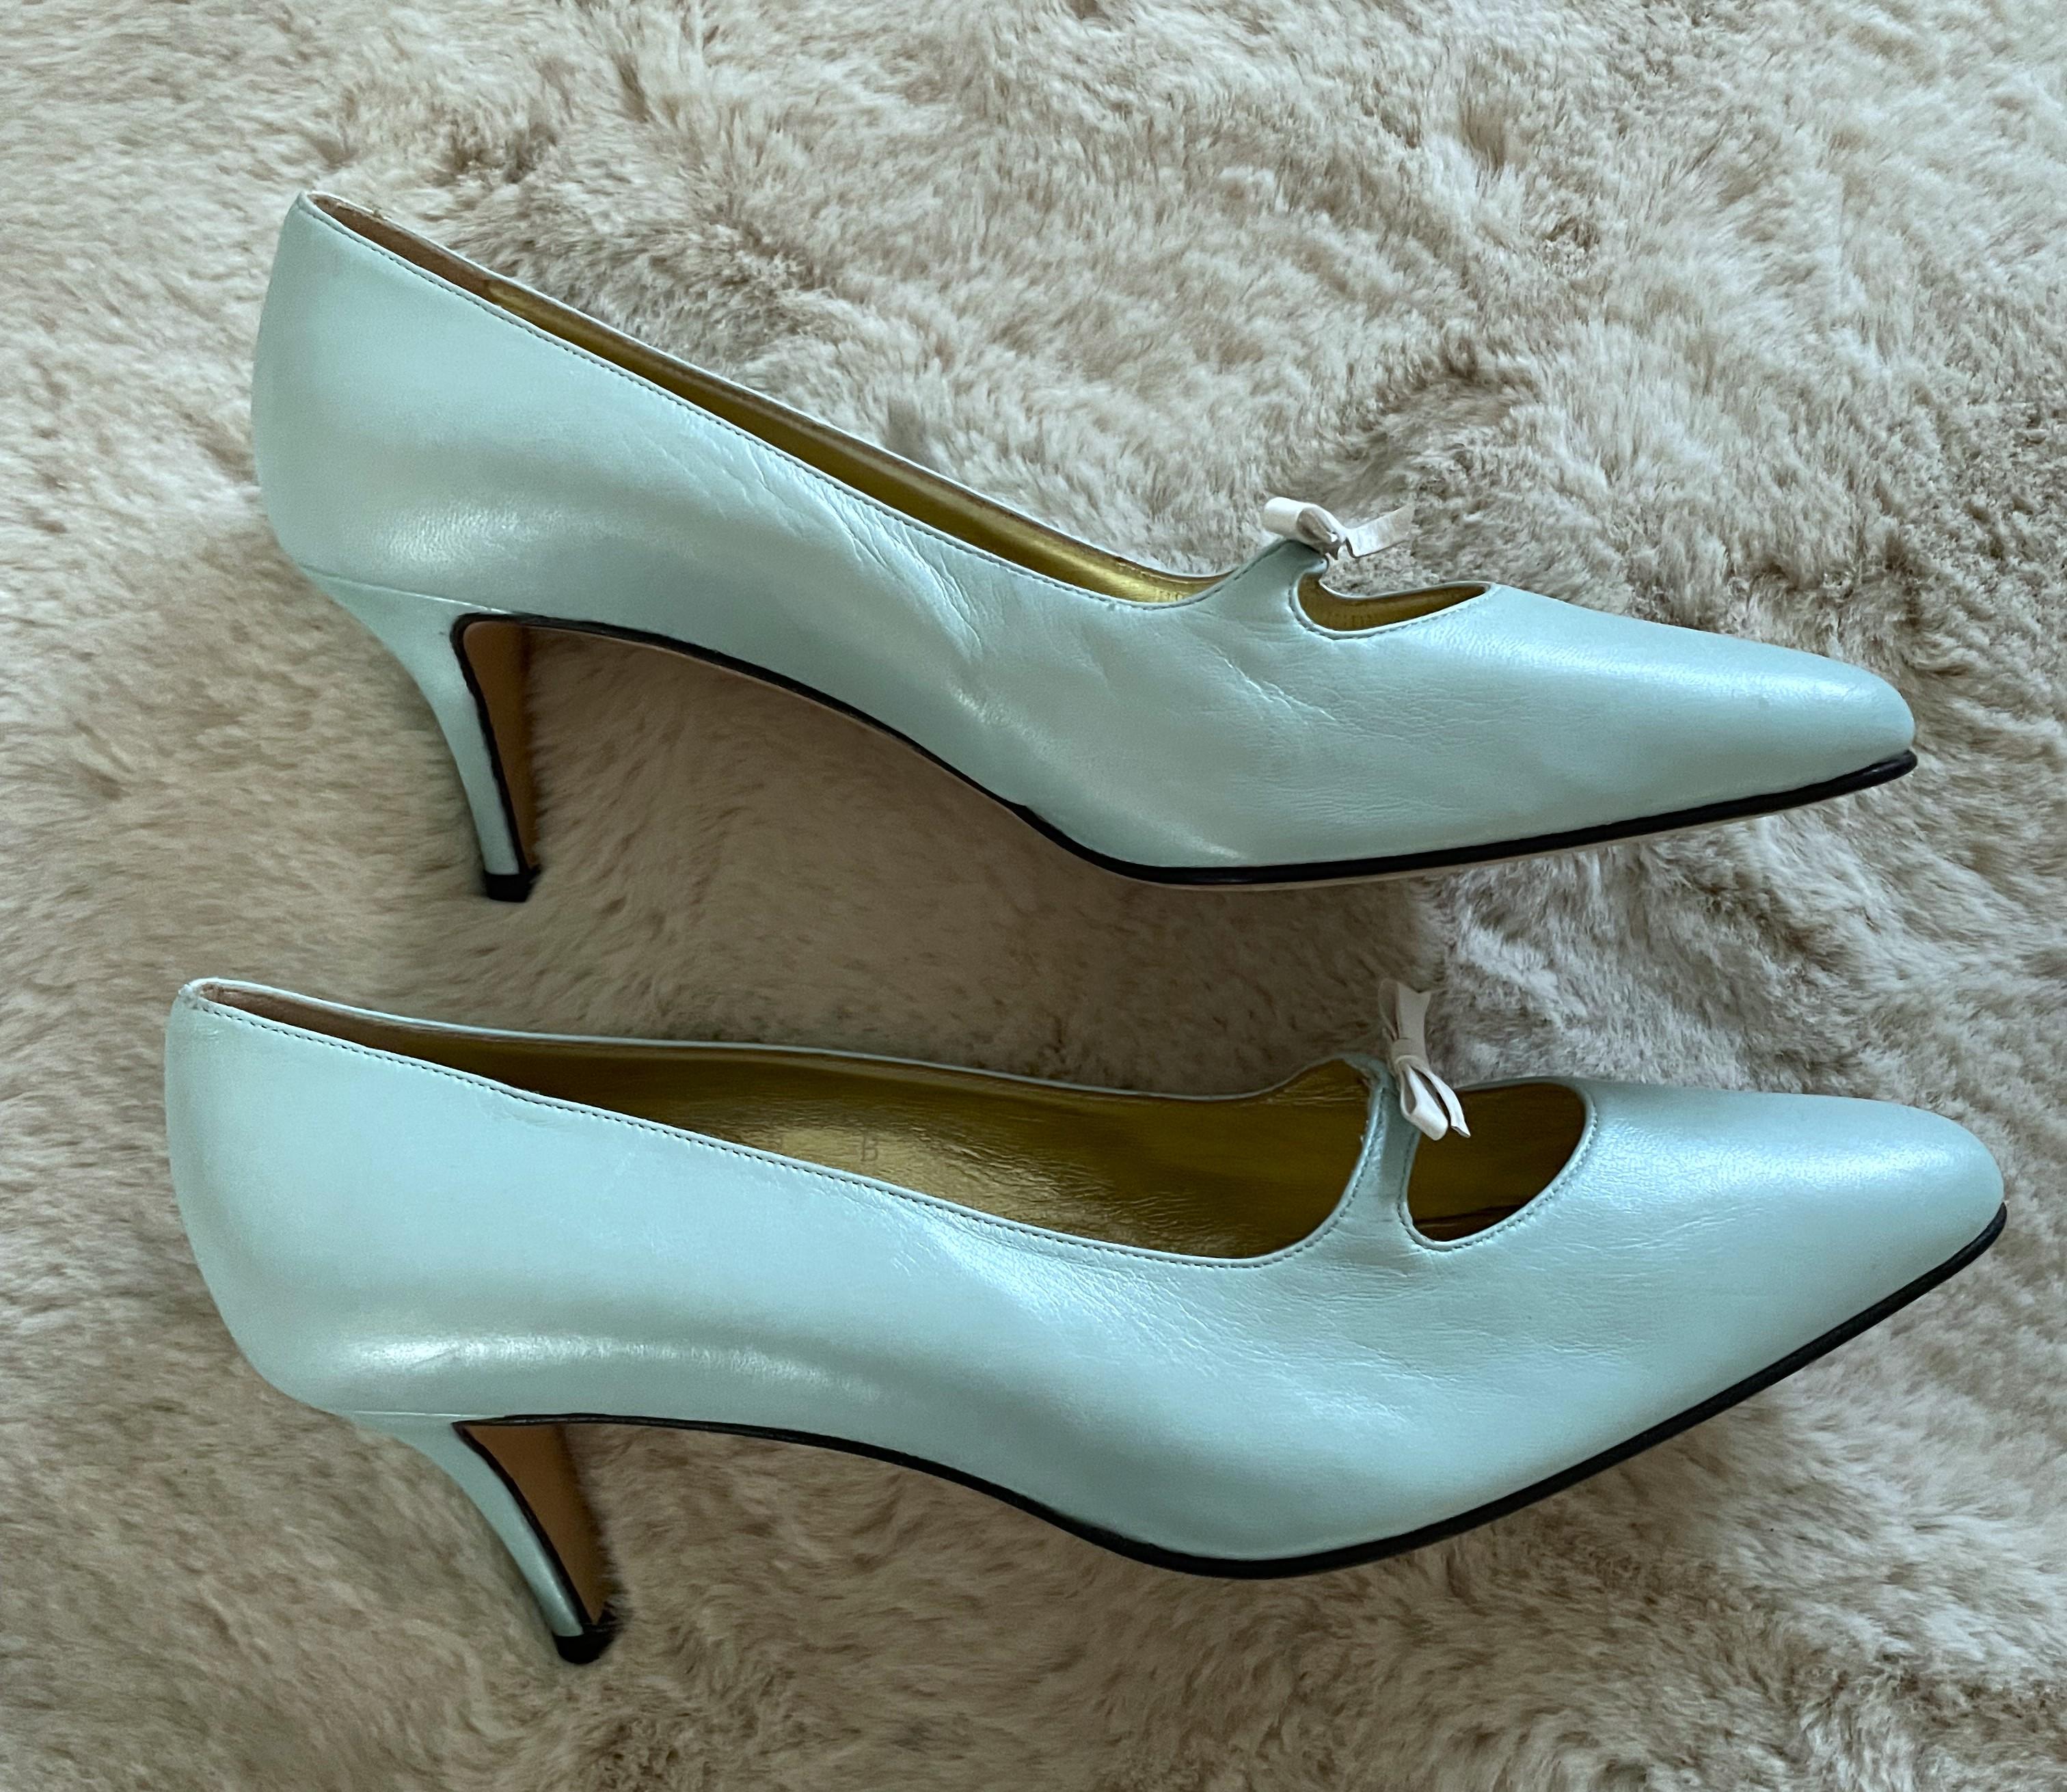 Ces mignons escarpins vintage difficiles à trouver Escada bleu bébé sont typiquement un type de chaussures pour femmes de.  les années 1990.  Cette couleur douce et pastel, d'un bleu métallique clair, était très populaire dans la mode des années